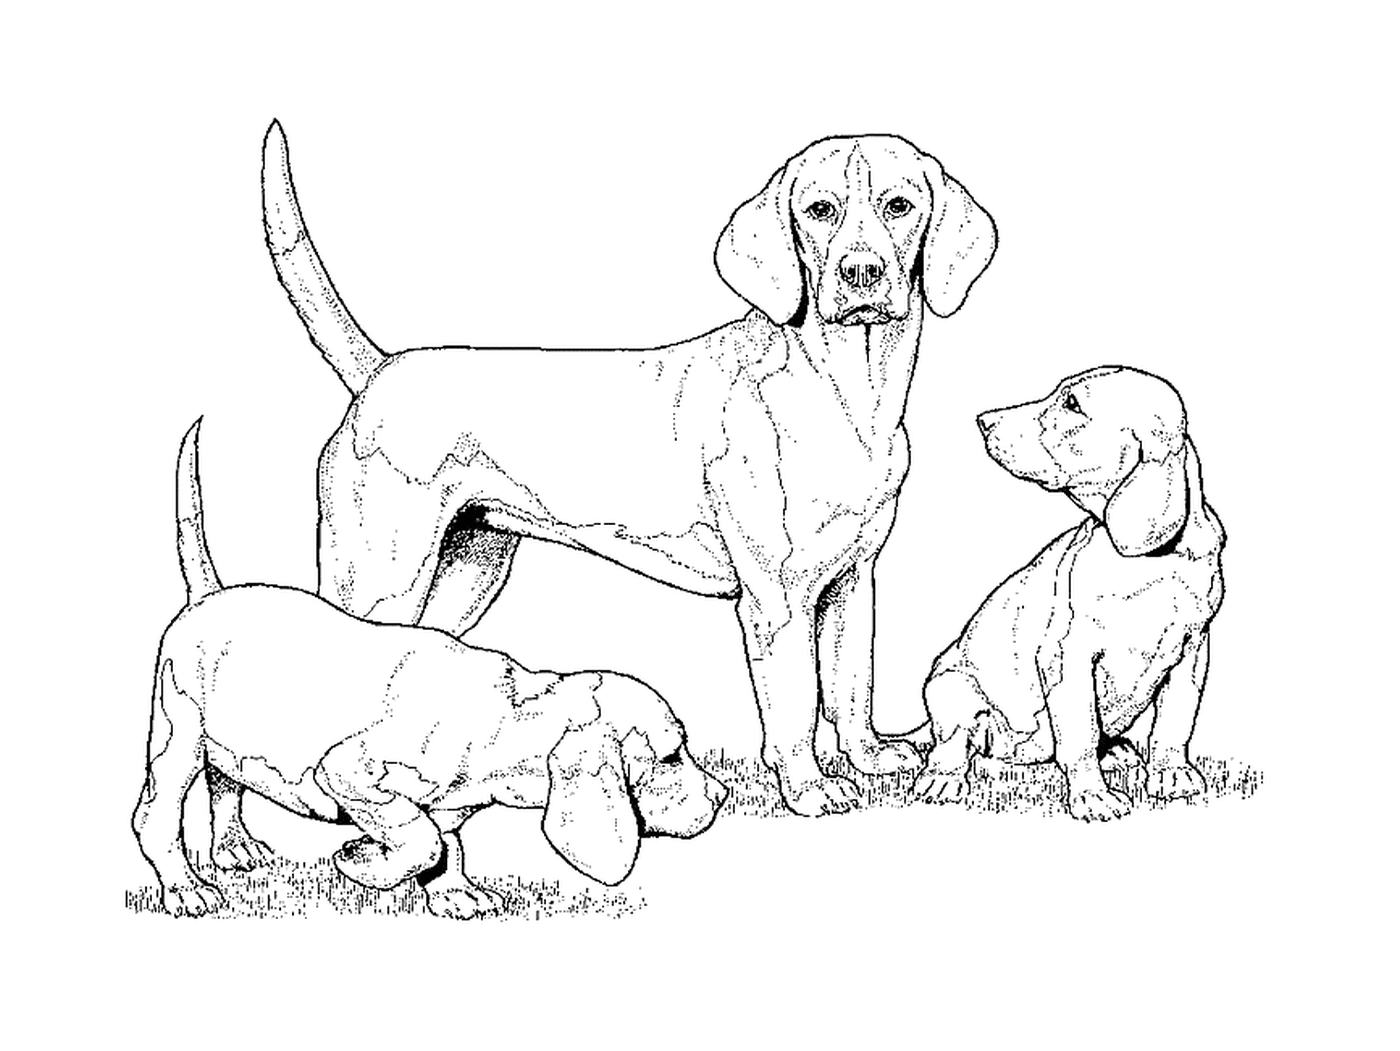  Группа собак, стоящих в траве 